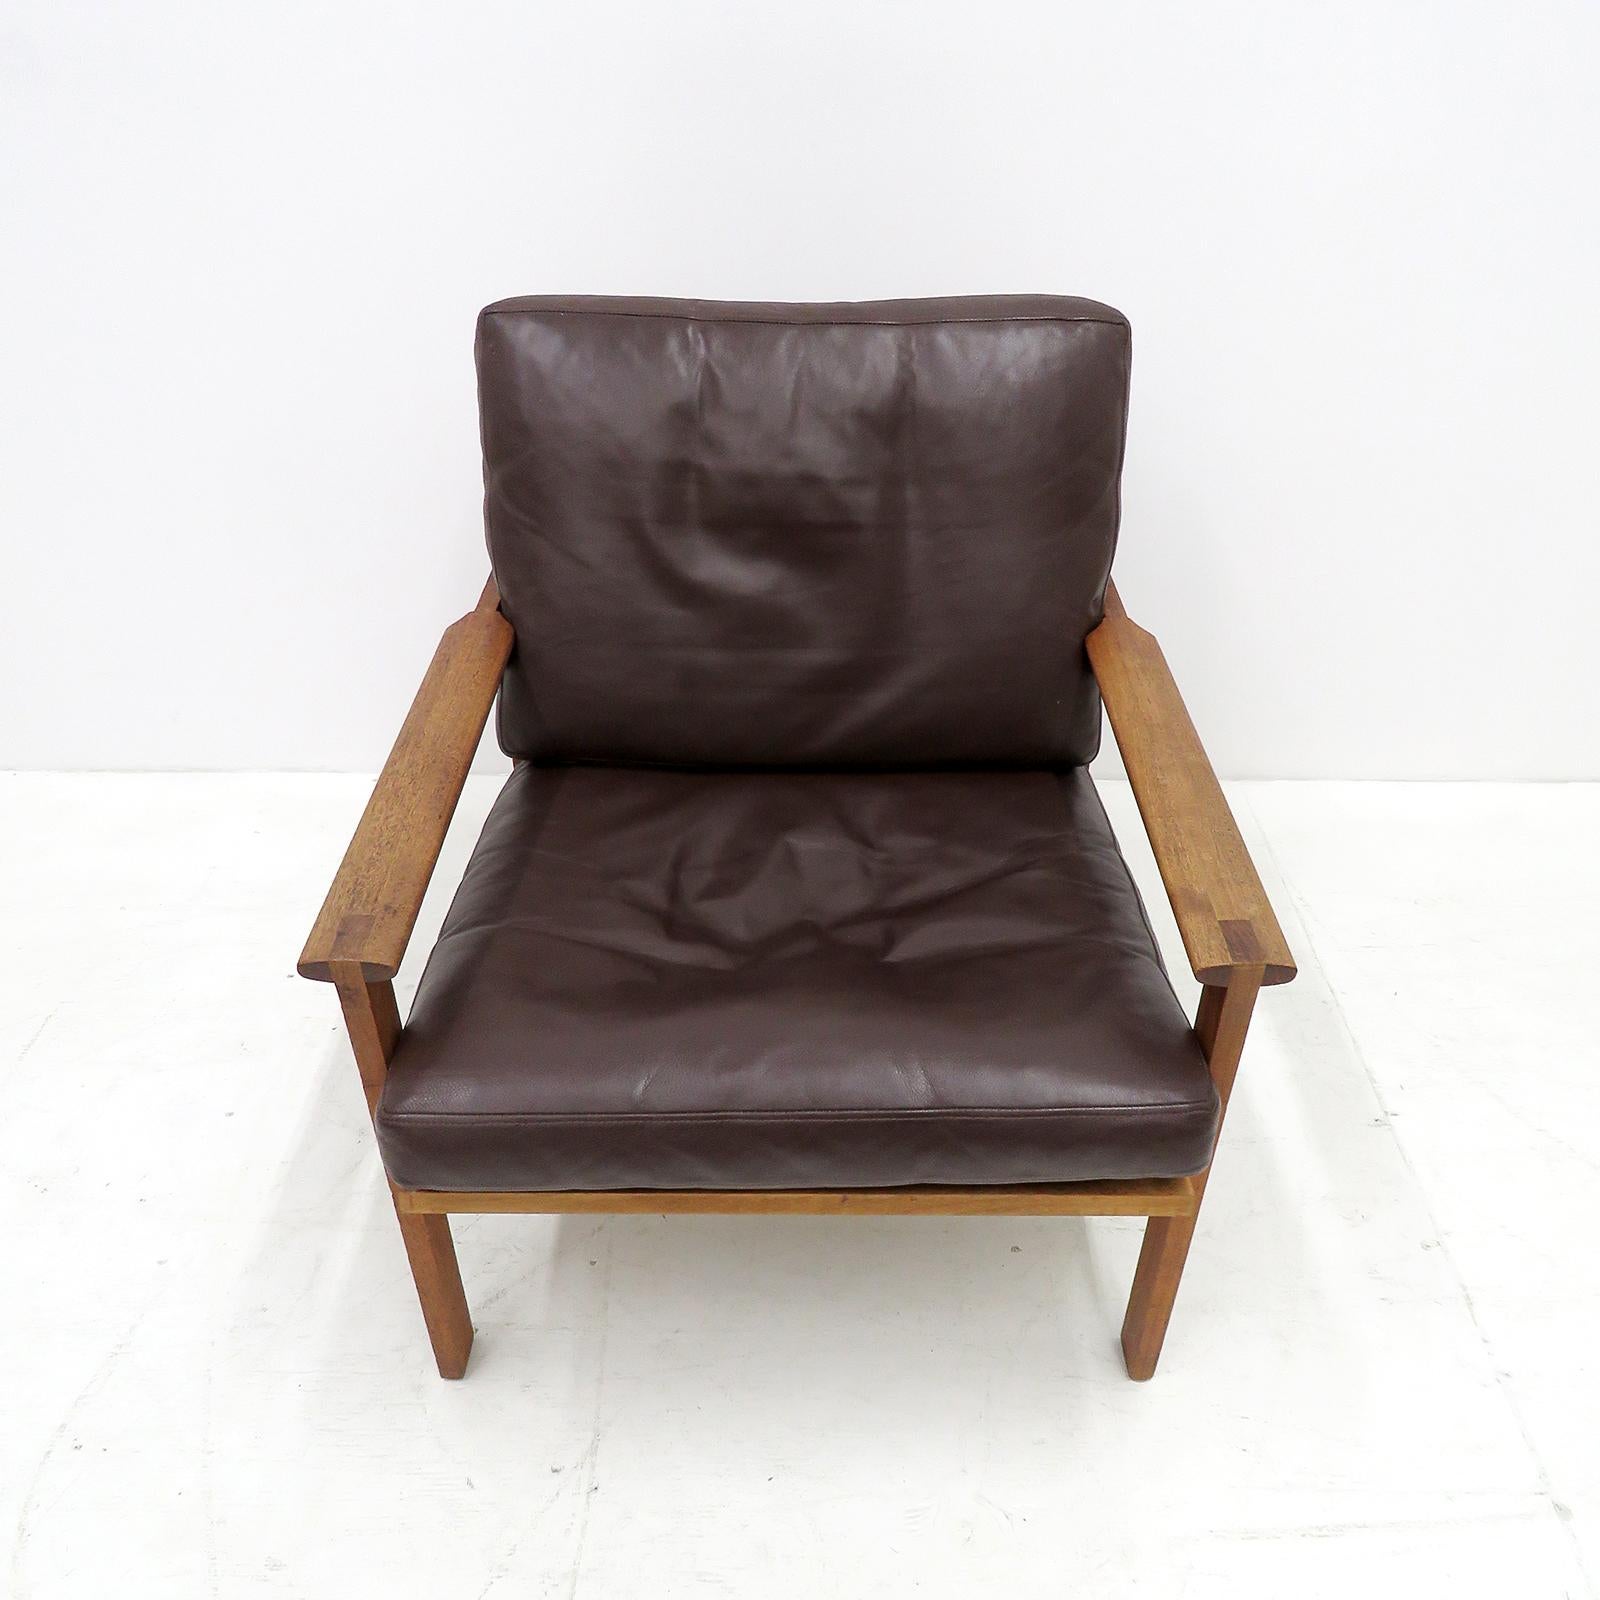 Remarquable paire de fauteuils de la série Capella, dessinée par Illum Wikkelsø, produite par Niels Eilersen au Danemark, conçue en 1959, cadres en bois de teck massif avec coussins libres en cuir brun foncé d'origine avec de légères traces normales